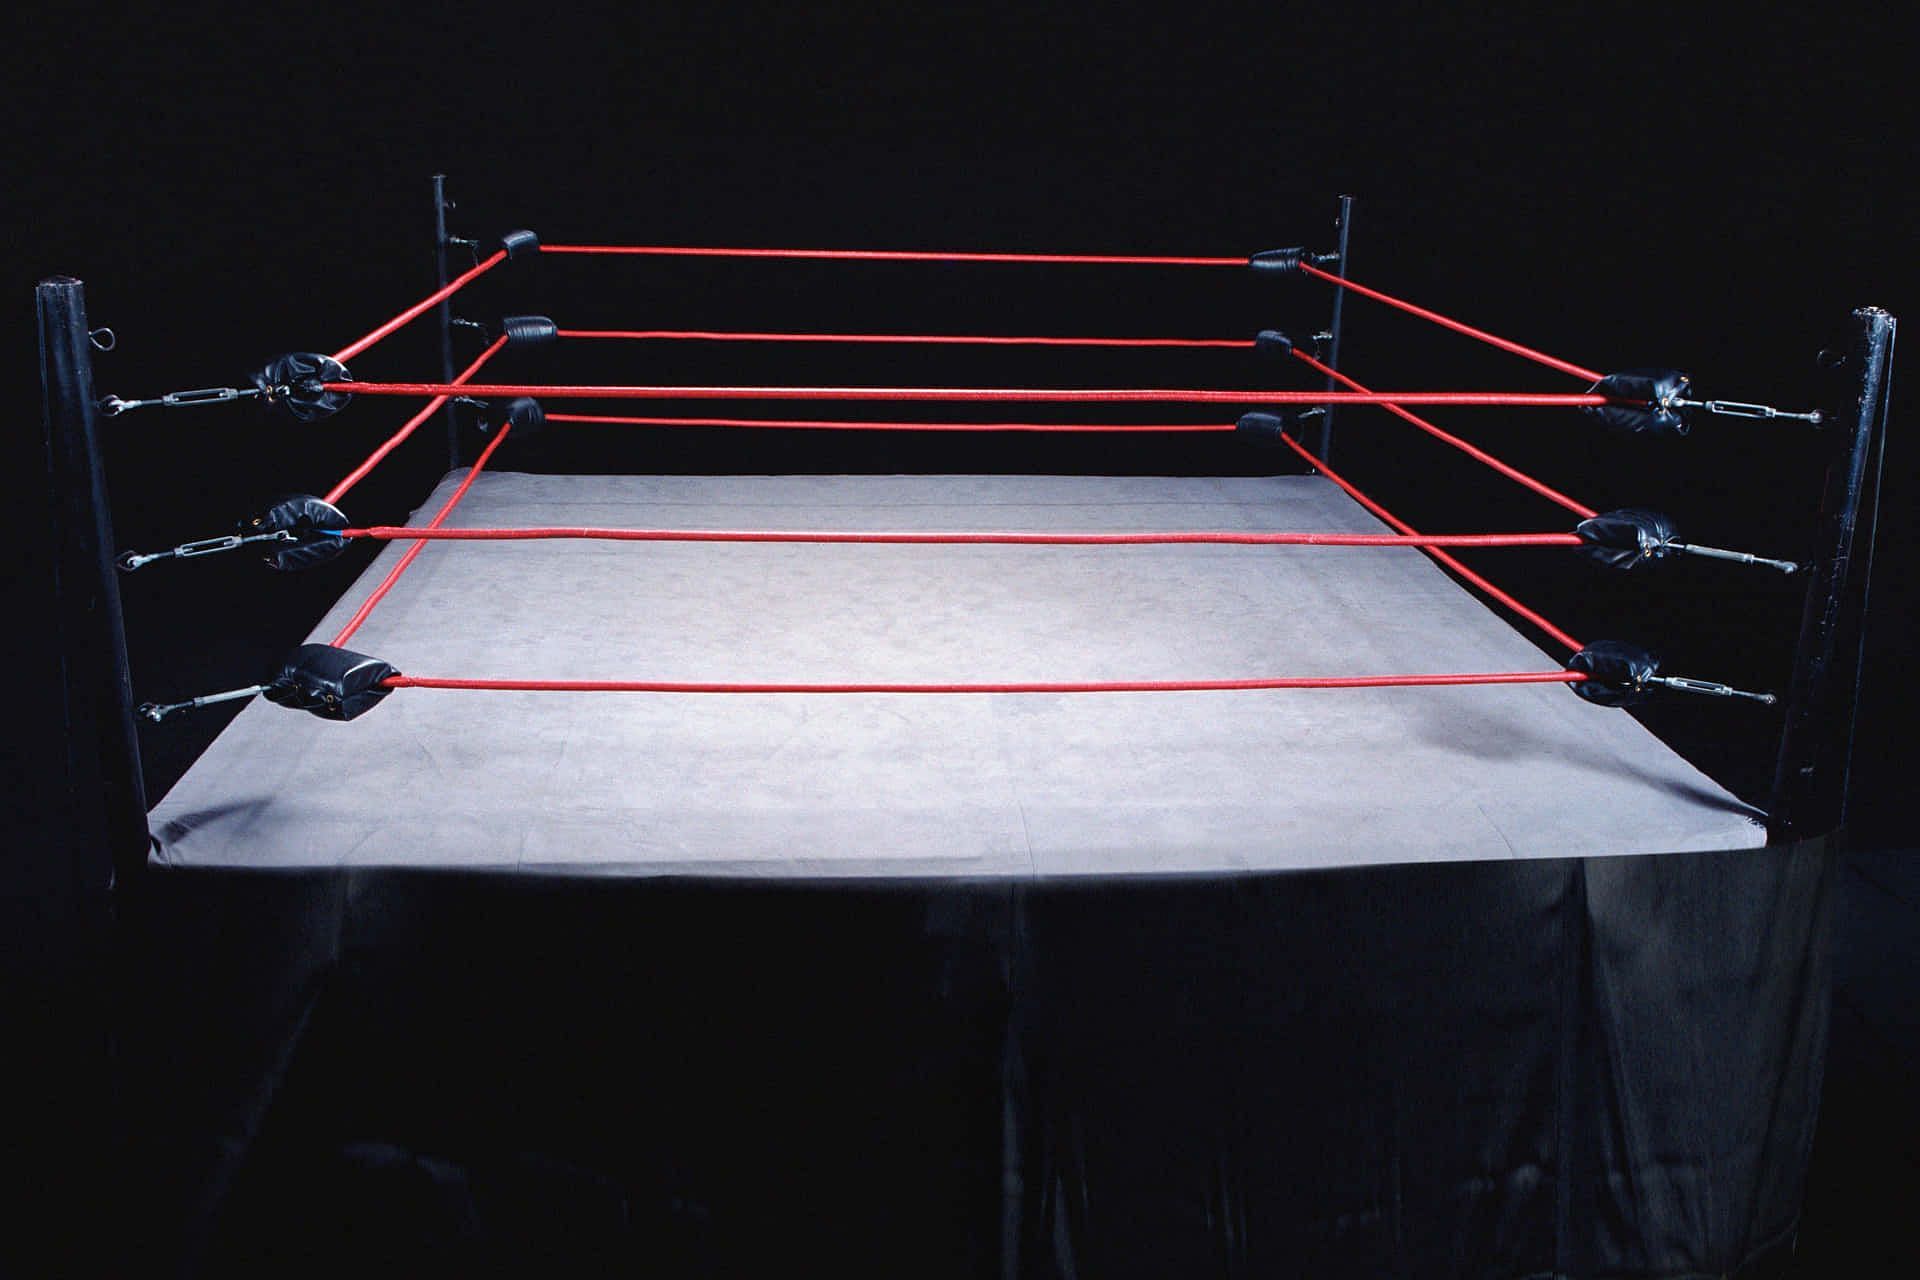 Pro wrestling ring on display inside arena